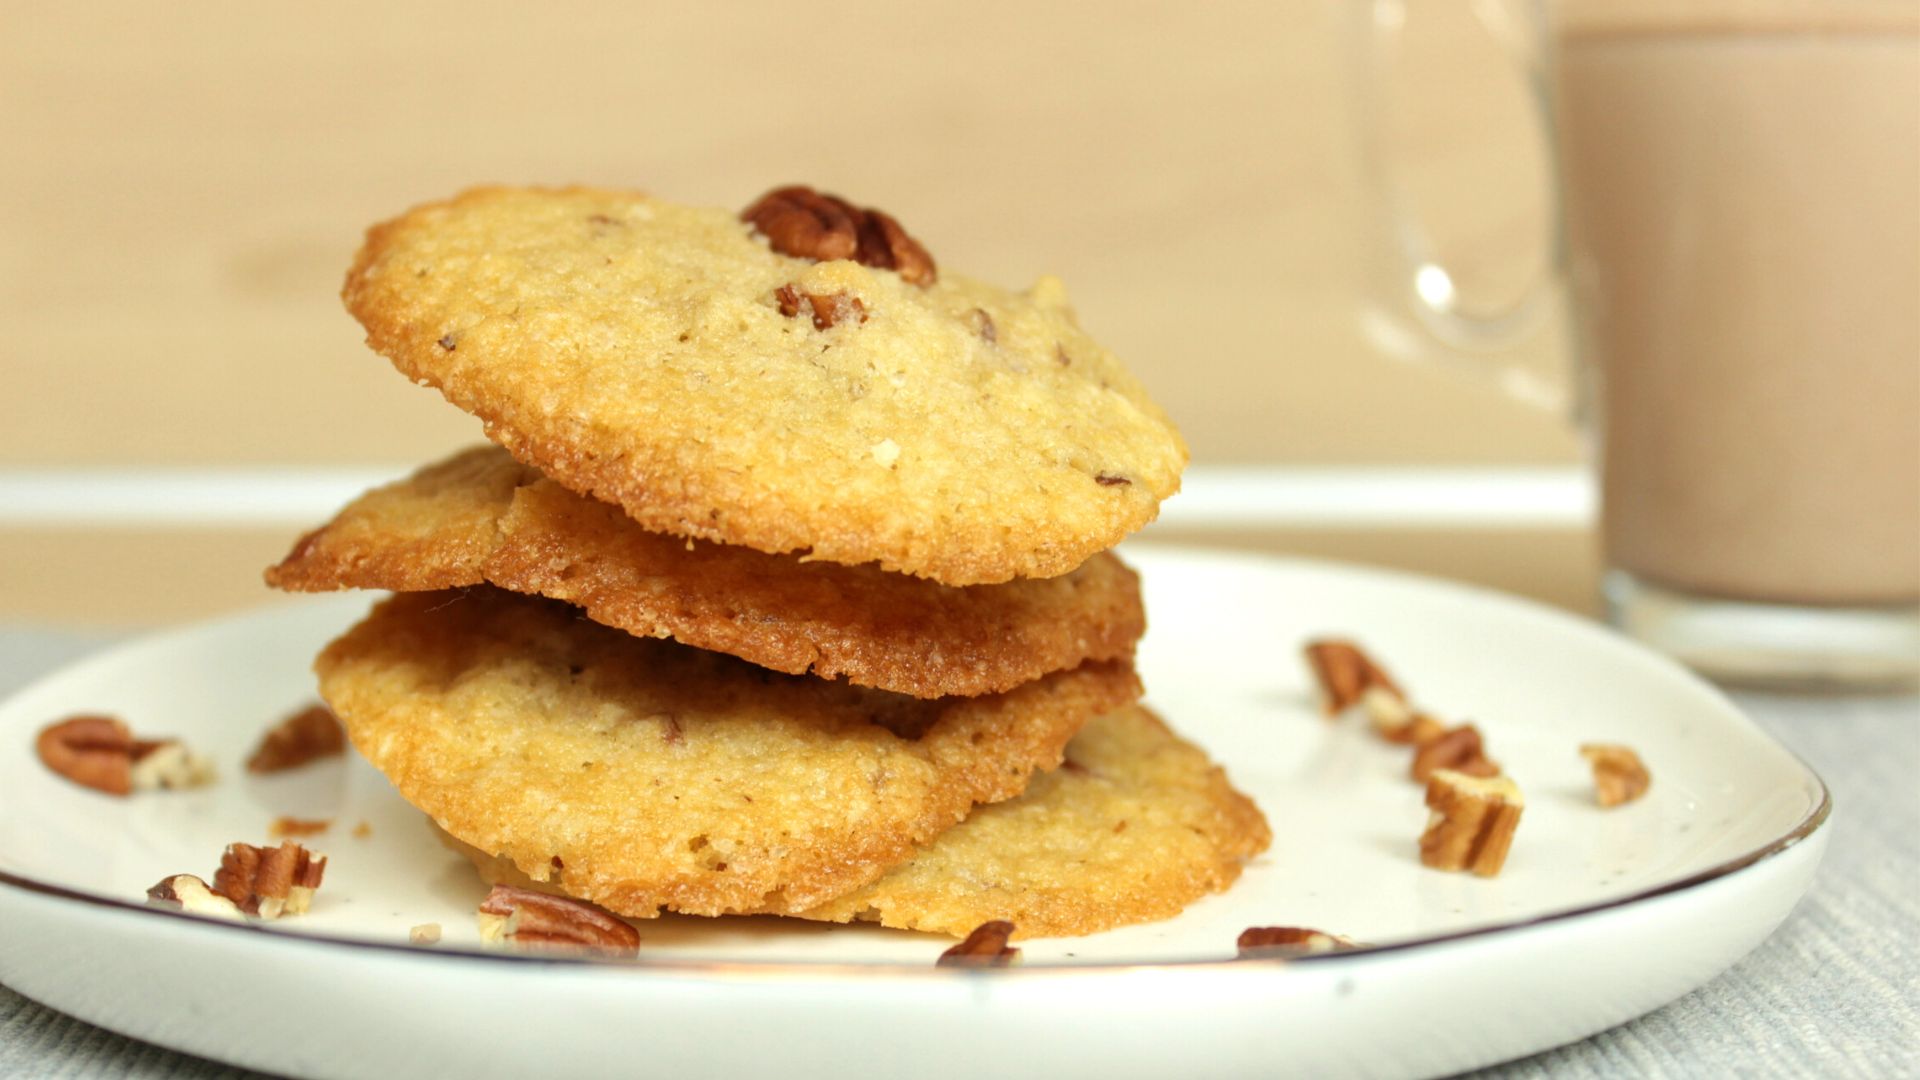 Coconut pecan cookies recipe